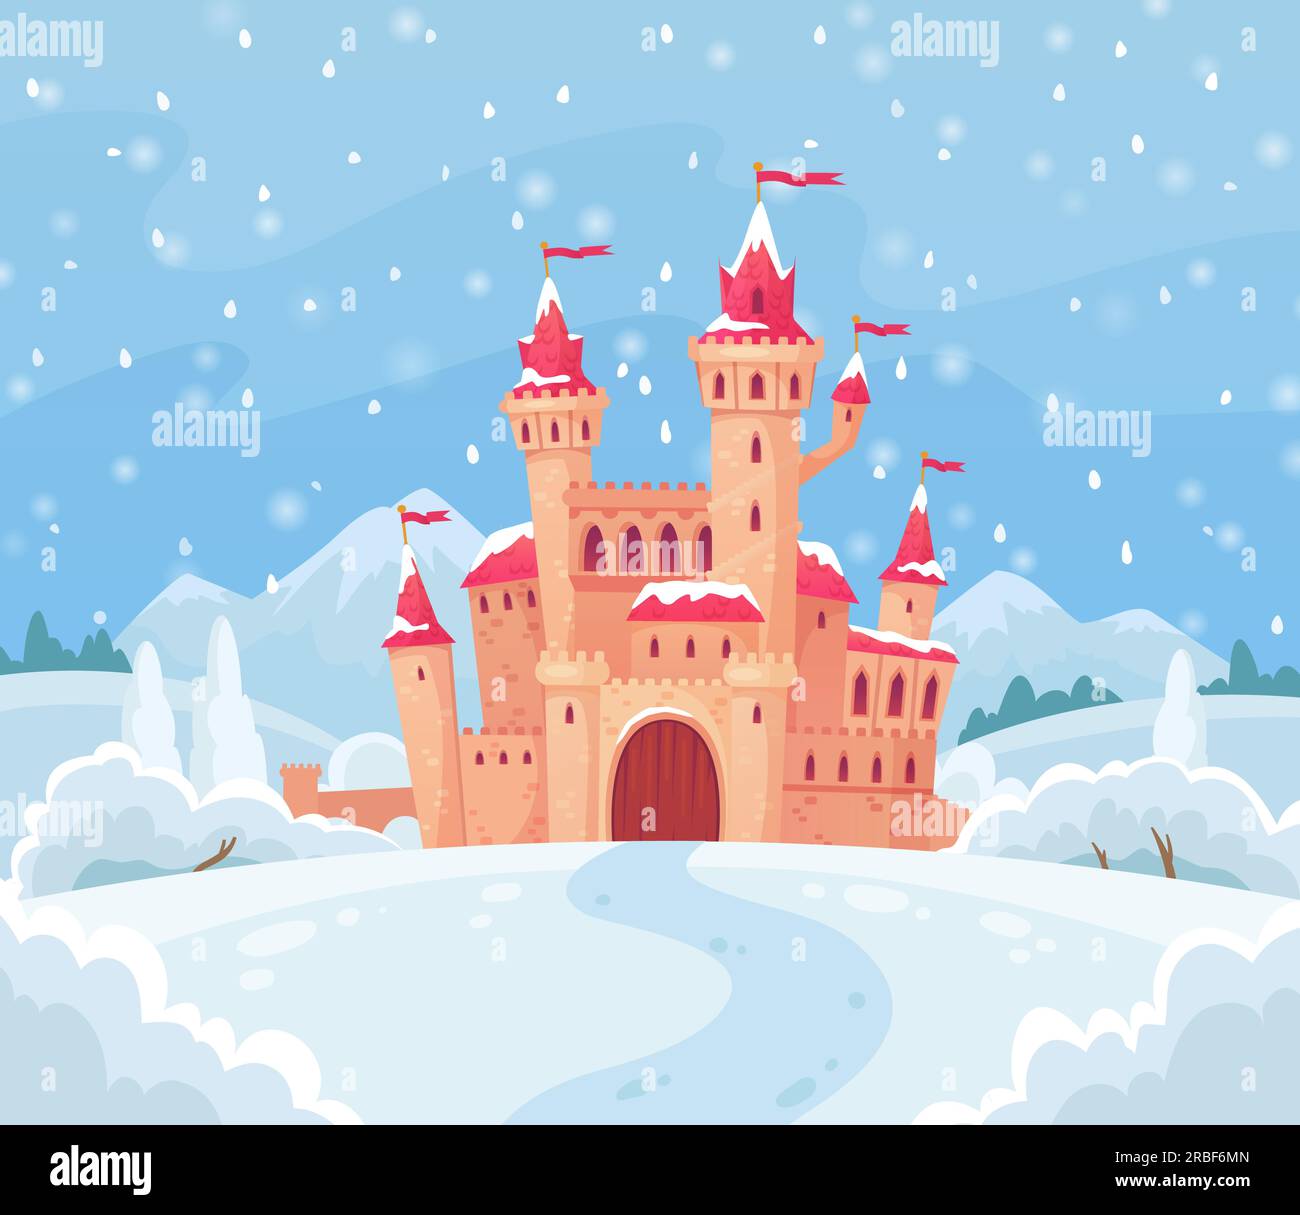 Castello invernale delle fiabe. Magico paesaggio innevato con la casa medievale del castello di neve, l'elfo di natale in lapponia o la casa della principessa di ghiaccio. Auto magica da palazzo Illustrazione Vettoriale